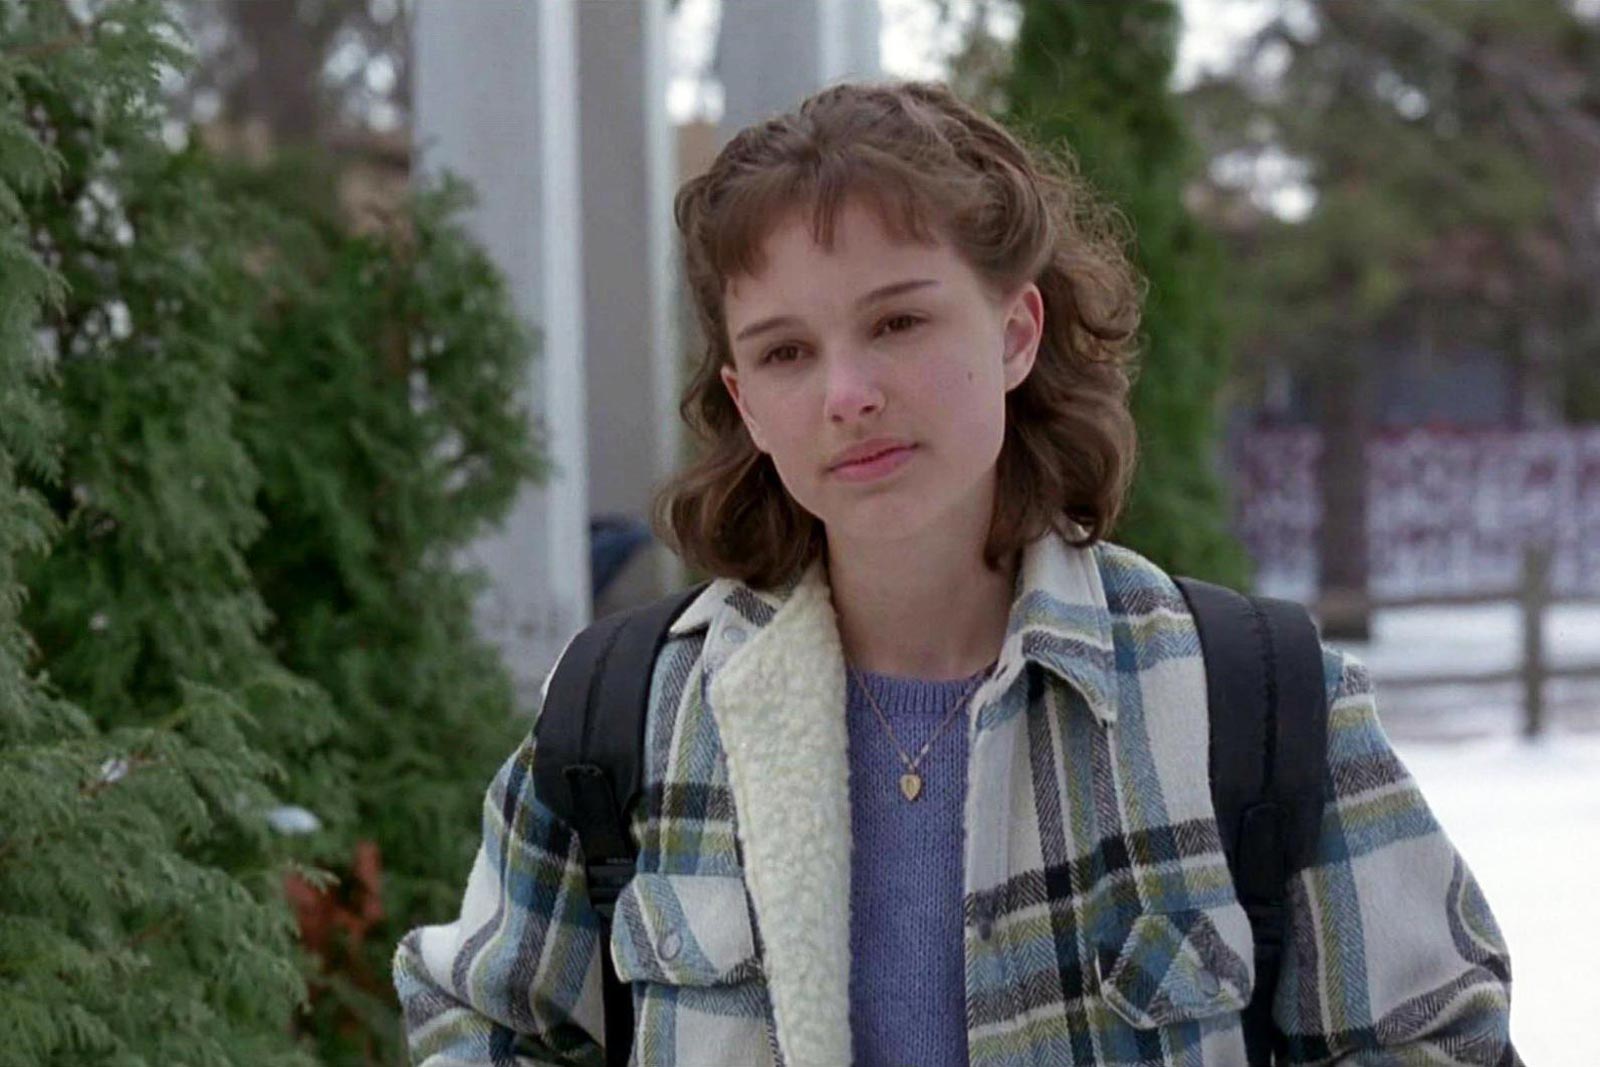 ناتالی پورتمن در نقش دختری نوجوان به نام مارتی در فیلم دختران زیبا